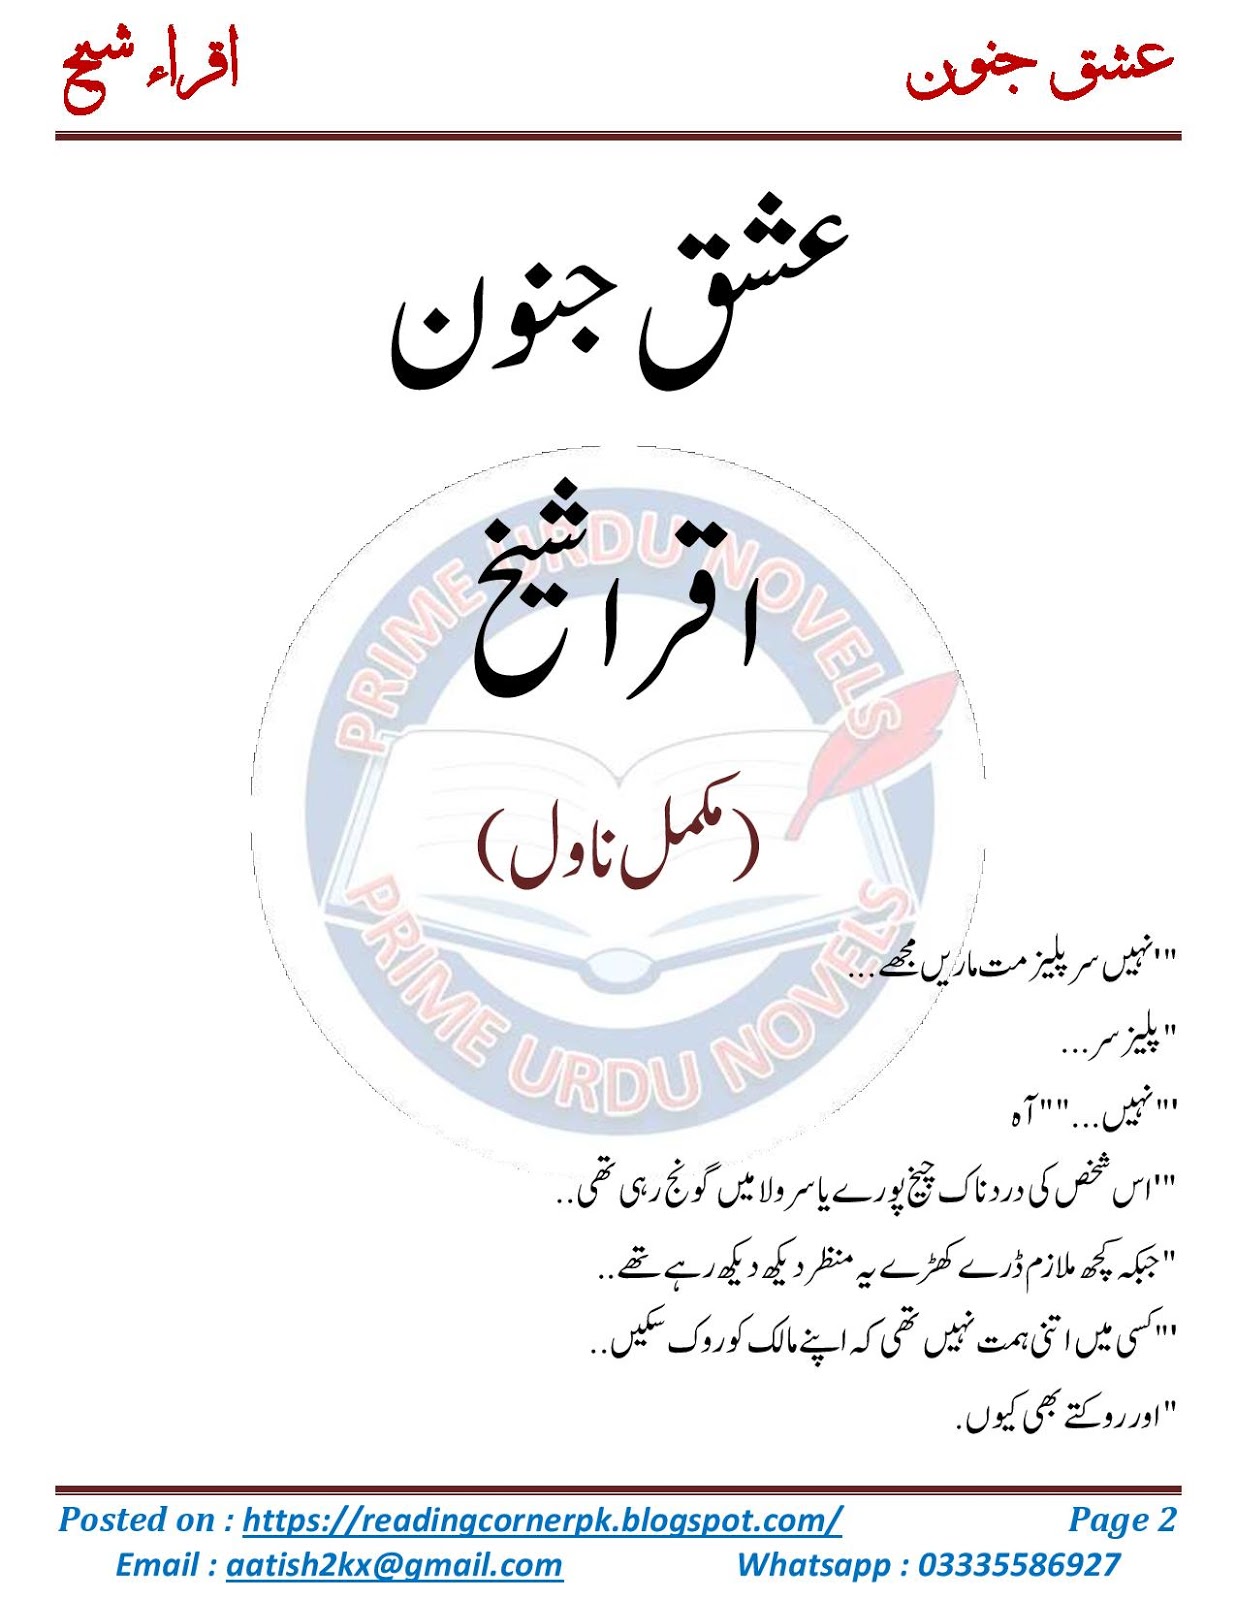 Reading Corner Huge Collection Of Urdu And English Novels Novel Pdf Download Novel Online Reading The description of junoon ishq novel app. novel pdf